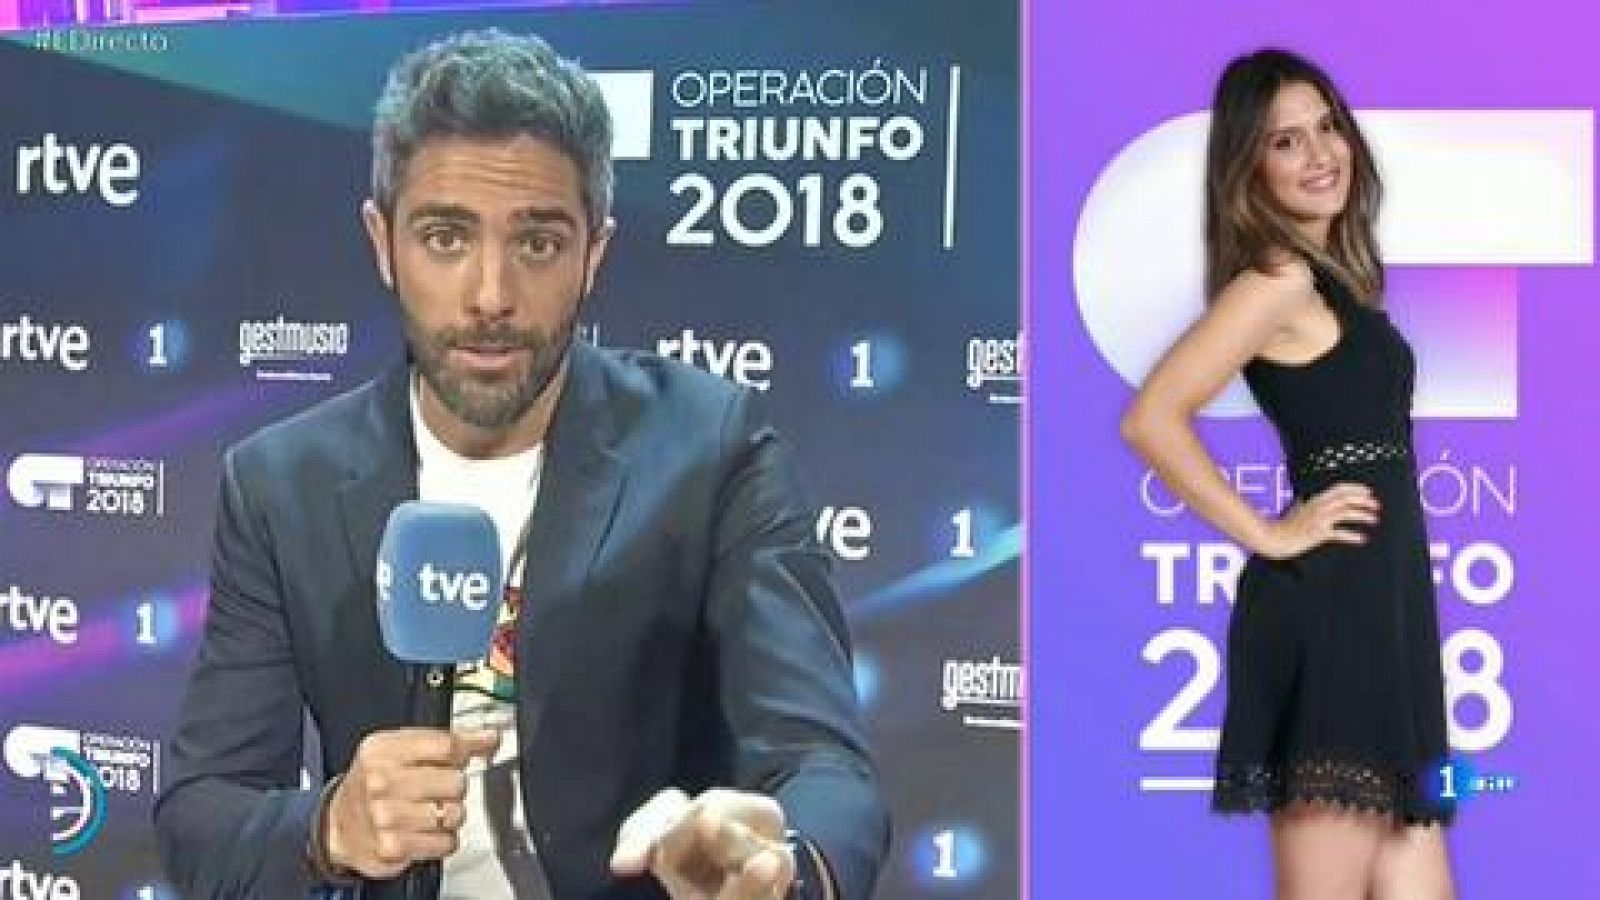 España Directo - Roberto Leal anuncia el nombre de los últimos 5 concursantes de OT 2018